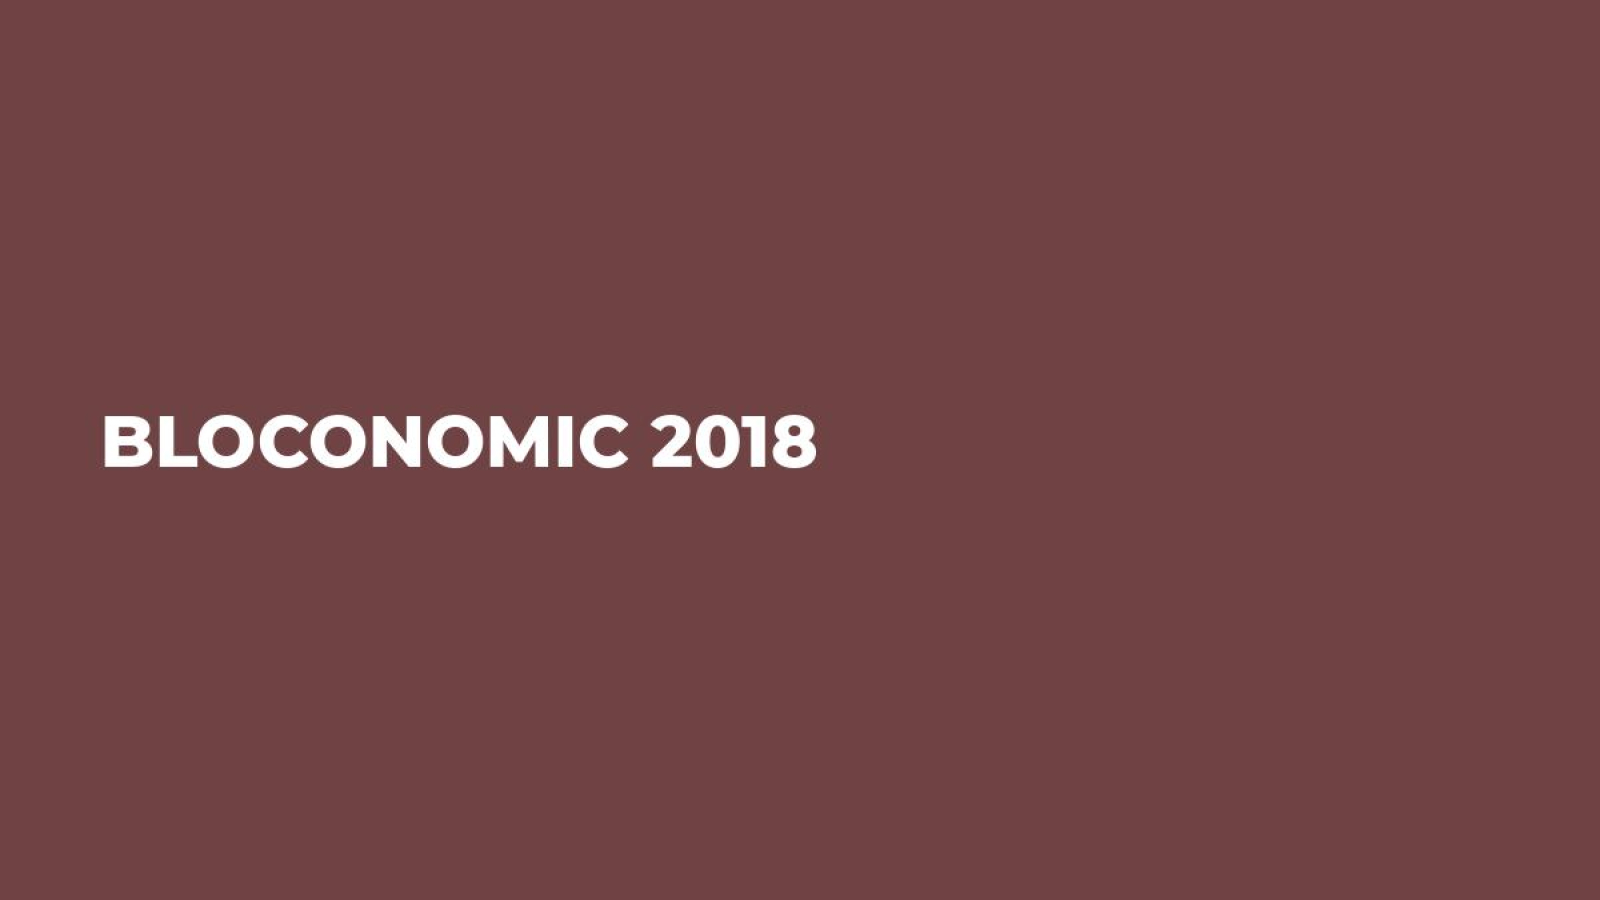 Bloconomic 2018